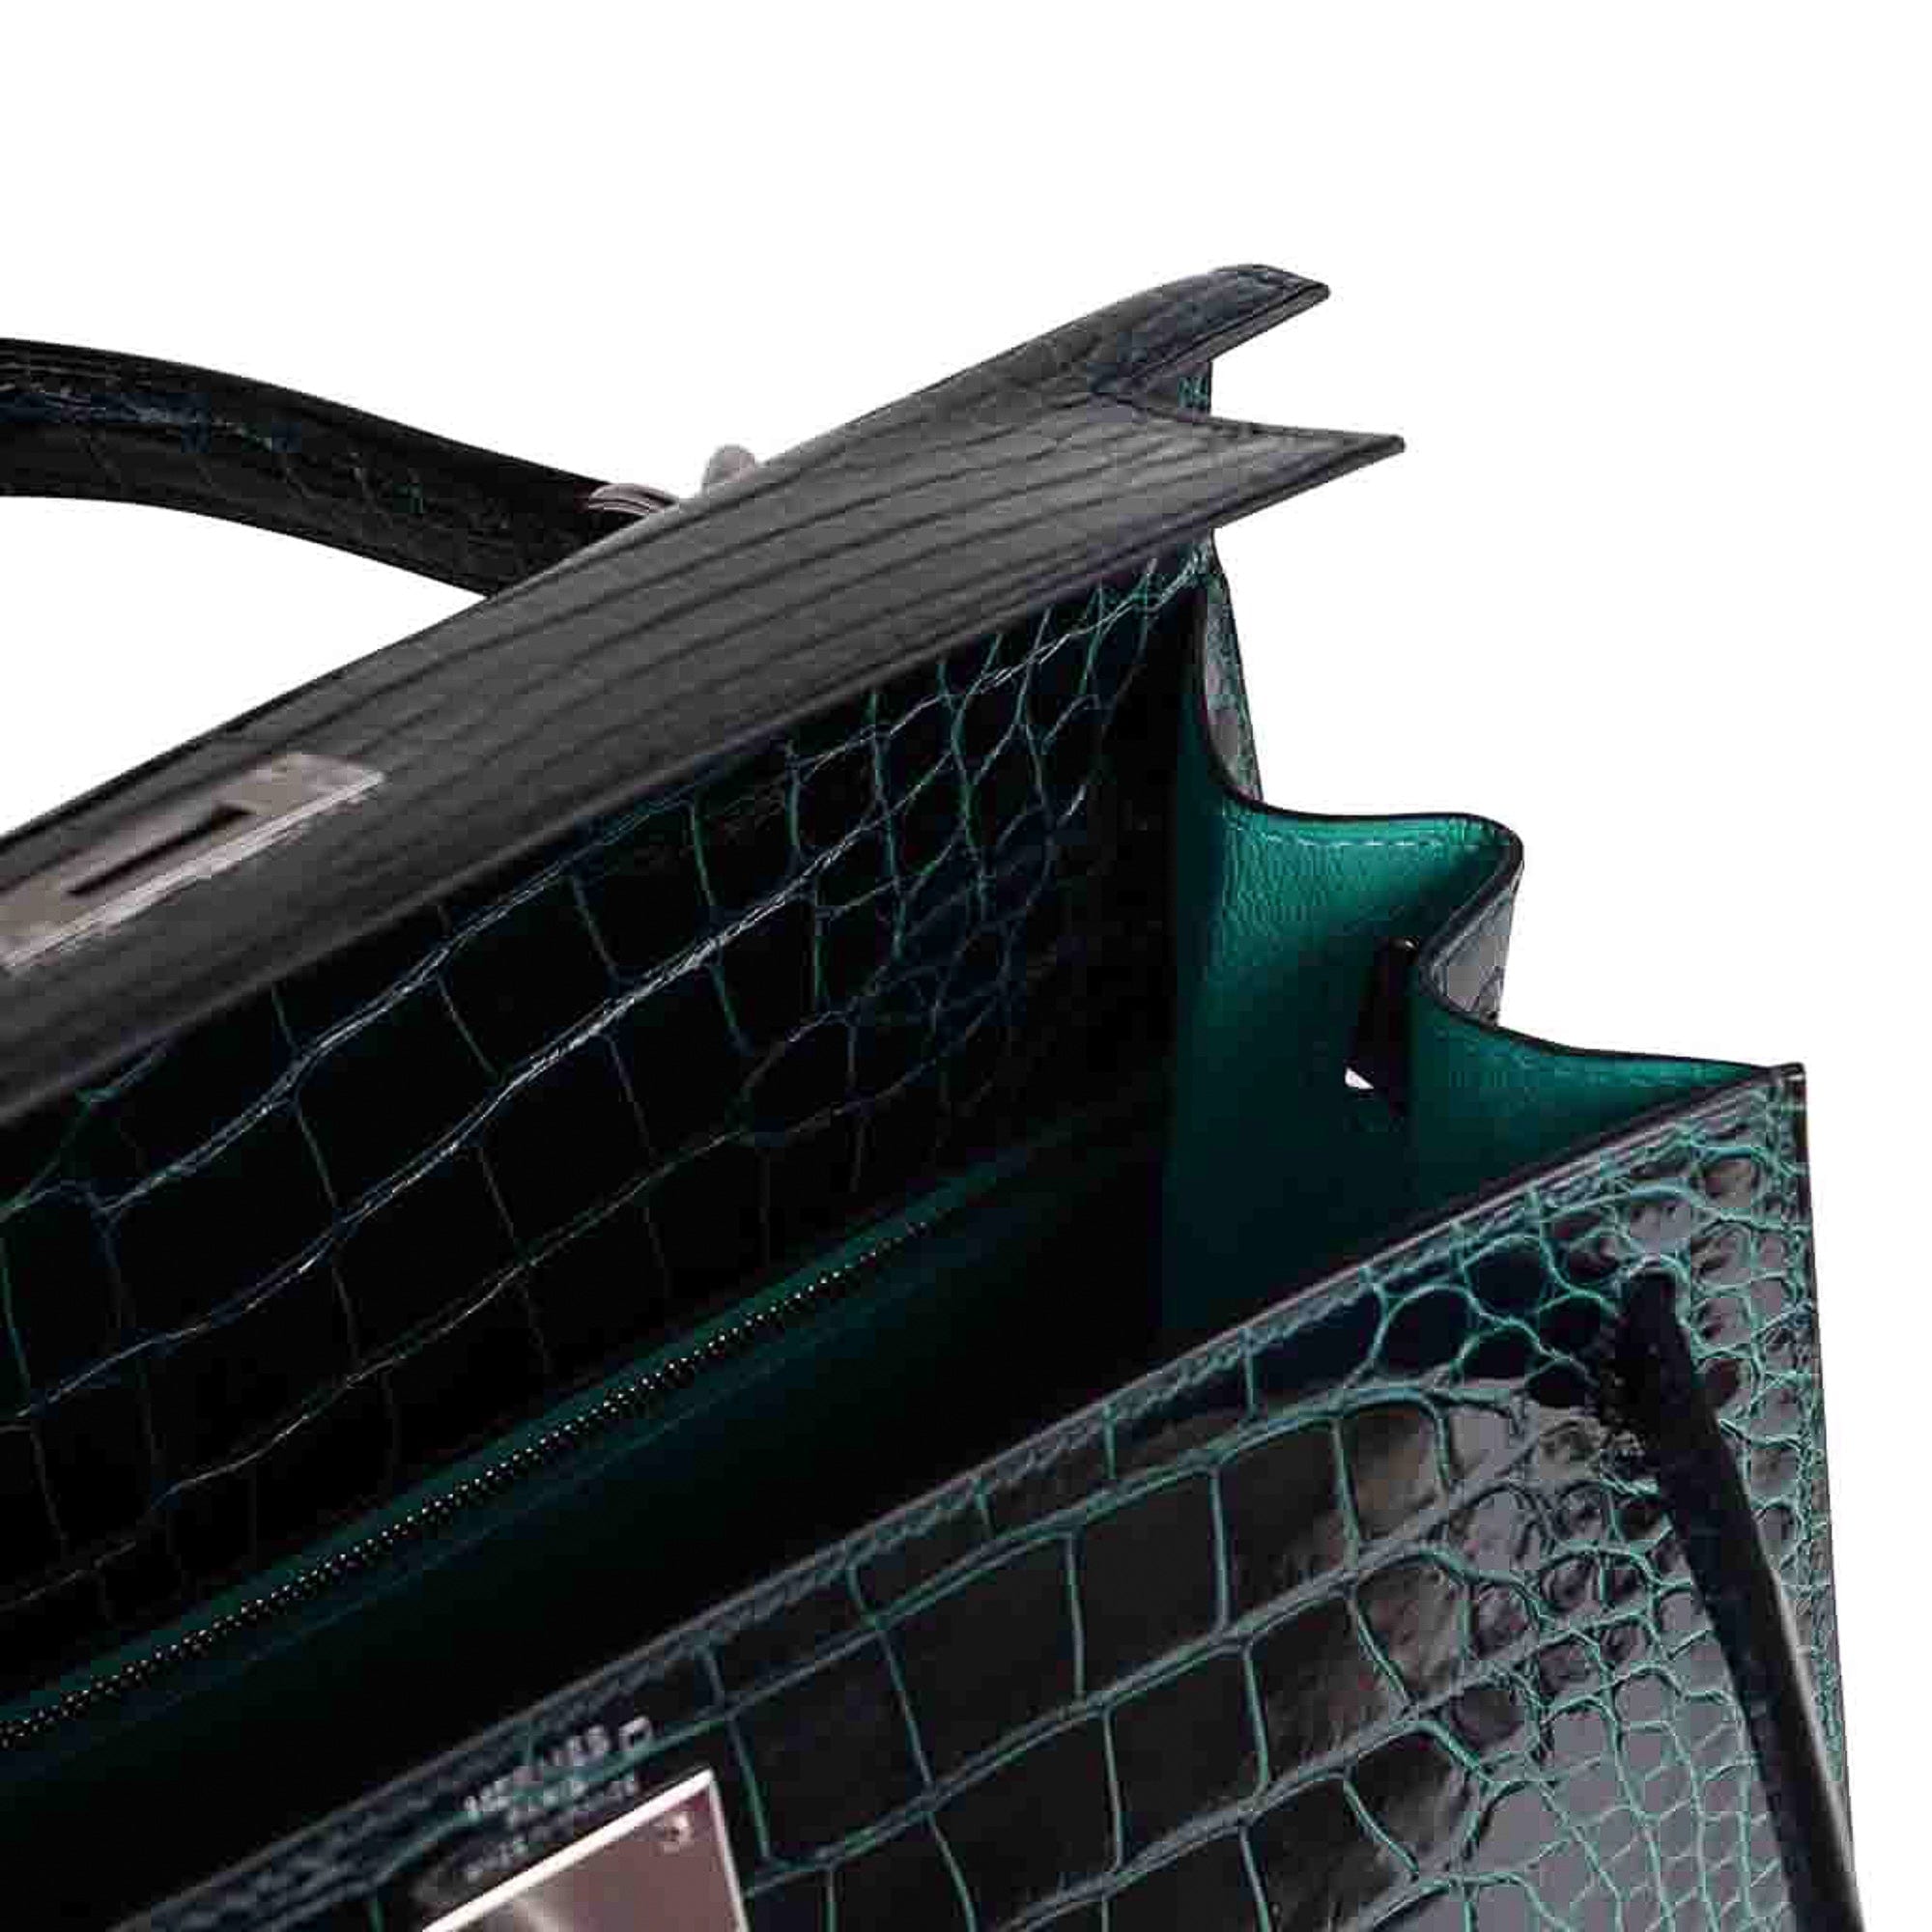 Hermes Kelly Pochette Vert Emerald Alligator Gold Hardware